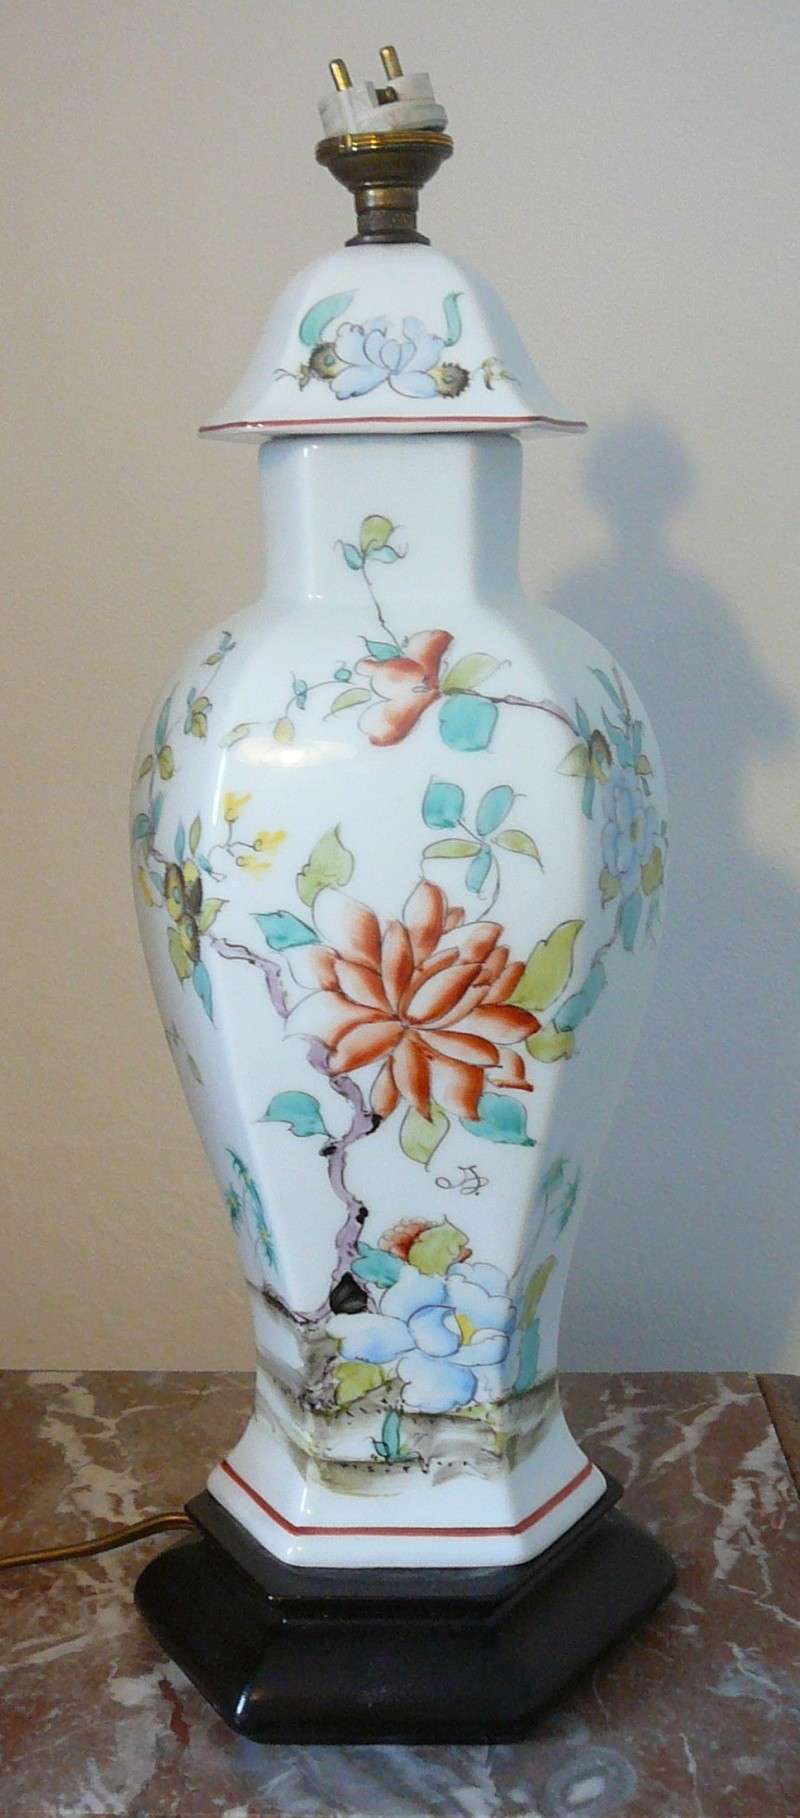 Lampe/vase inspiration asiatique P1030256